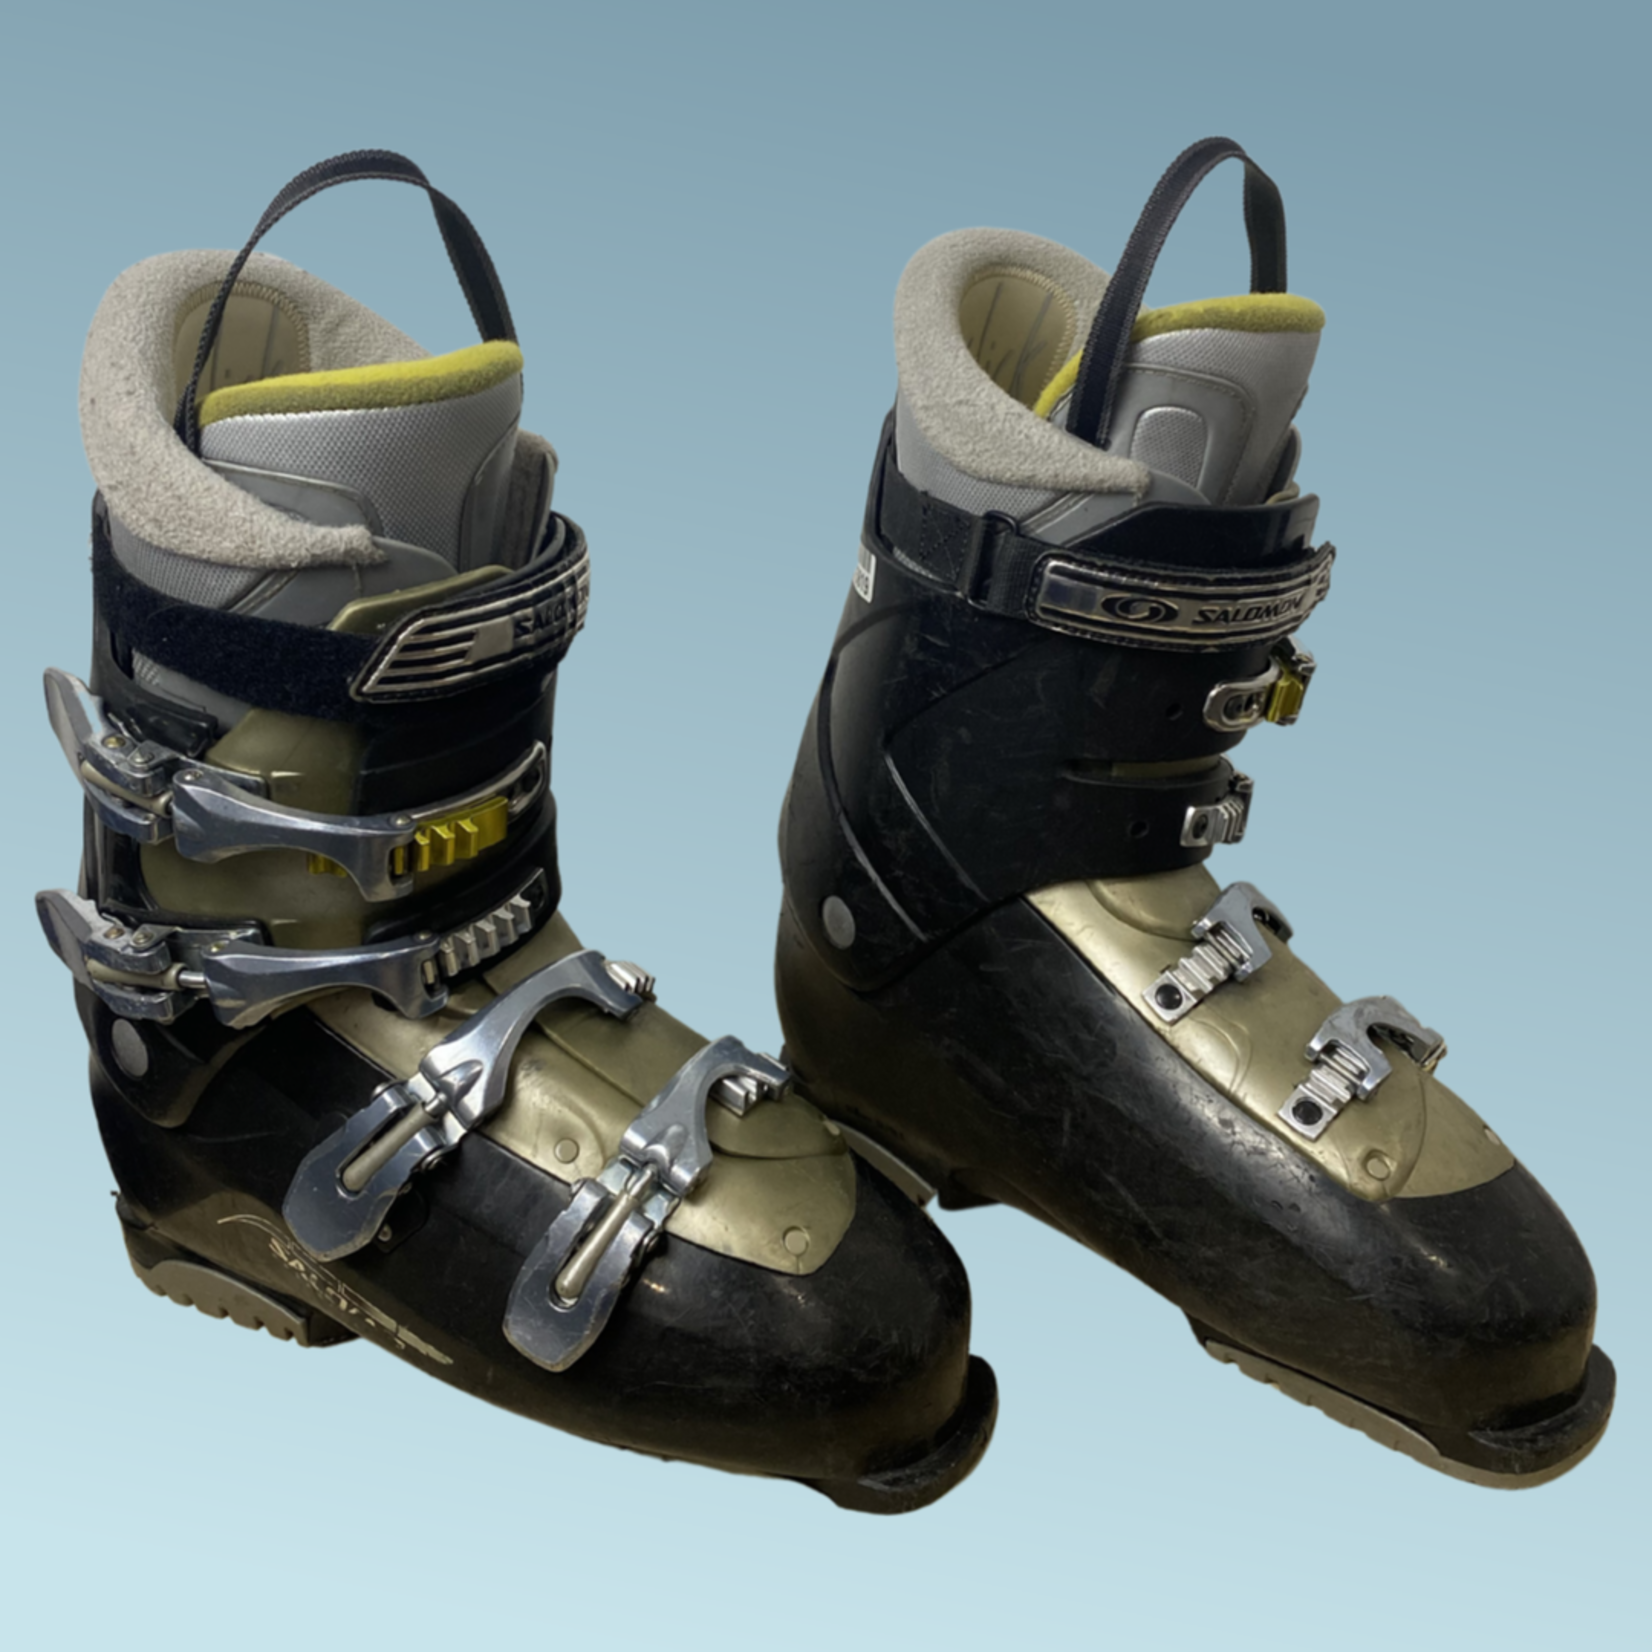 Salomon Salomon Performa 6 Ski Boots